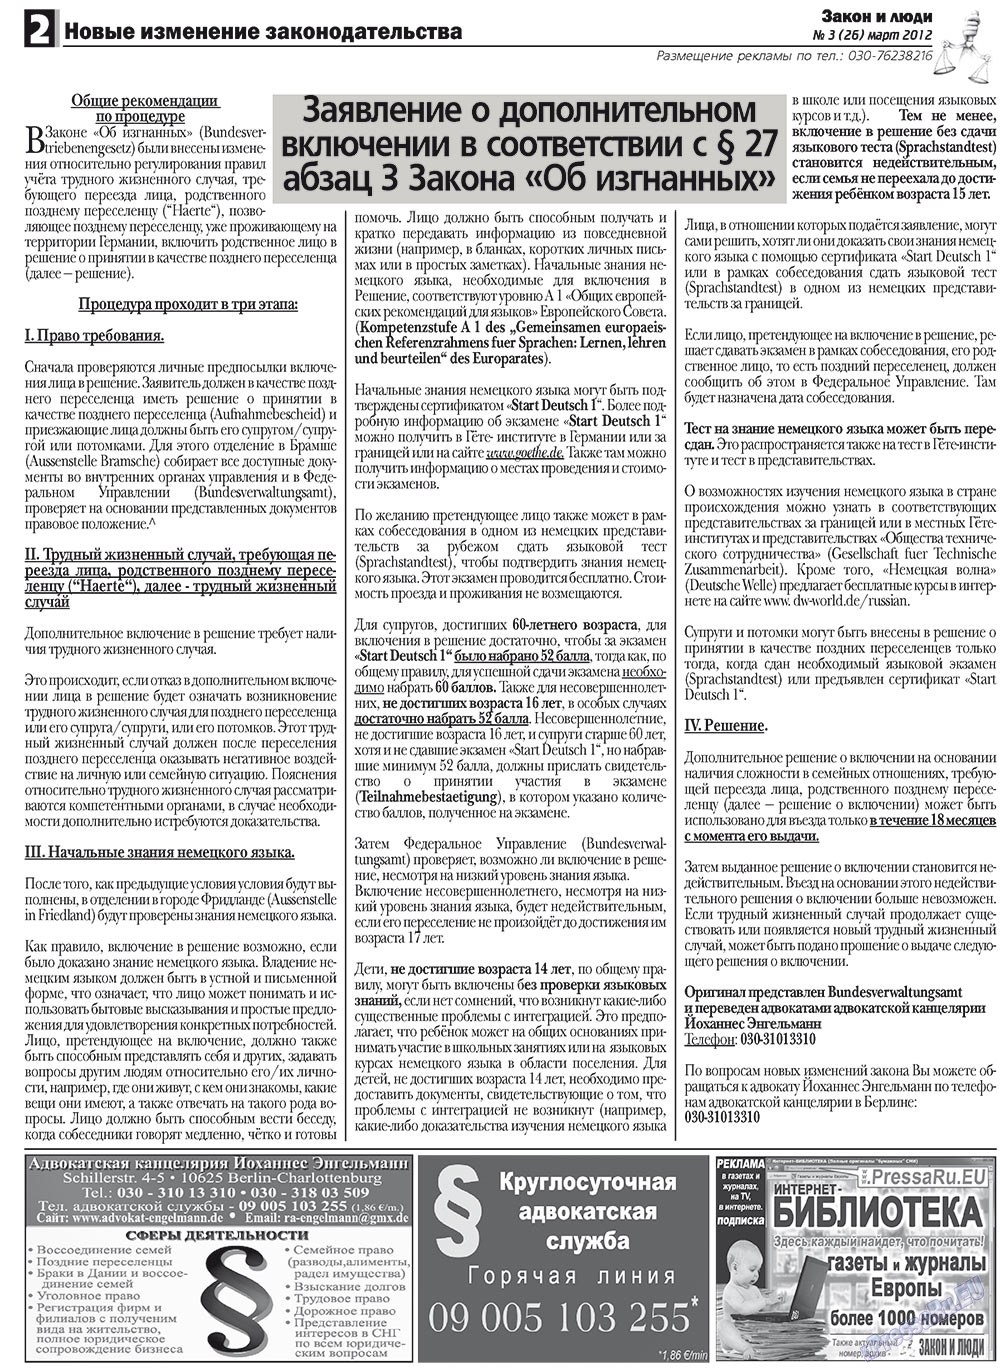 Закон и люди, газета. 2012 №3 стр.2